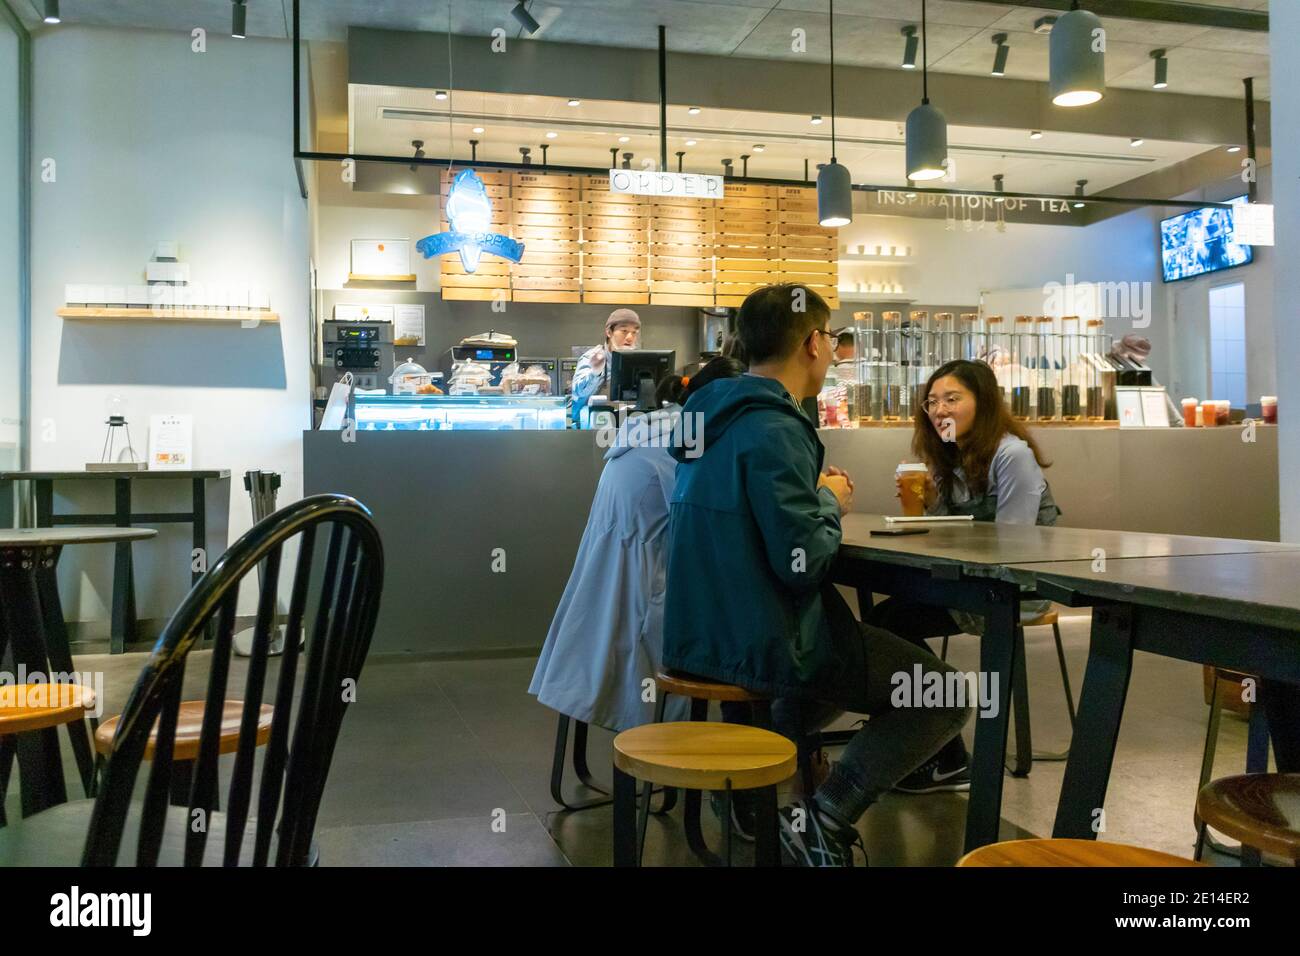 Shanghai, CINA, giovani adulti, persone all'interno del Coffee Shop per adolescenti cinesi, HKRI Taikoo Hui, chiacchierare al Tables, DESIGN D'INTERNI modernista, giovane donna cinese Foto Stock